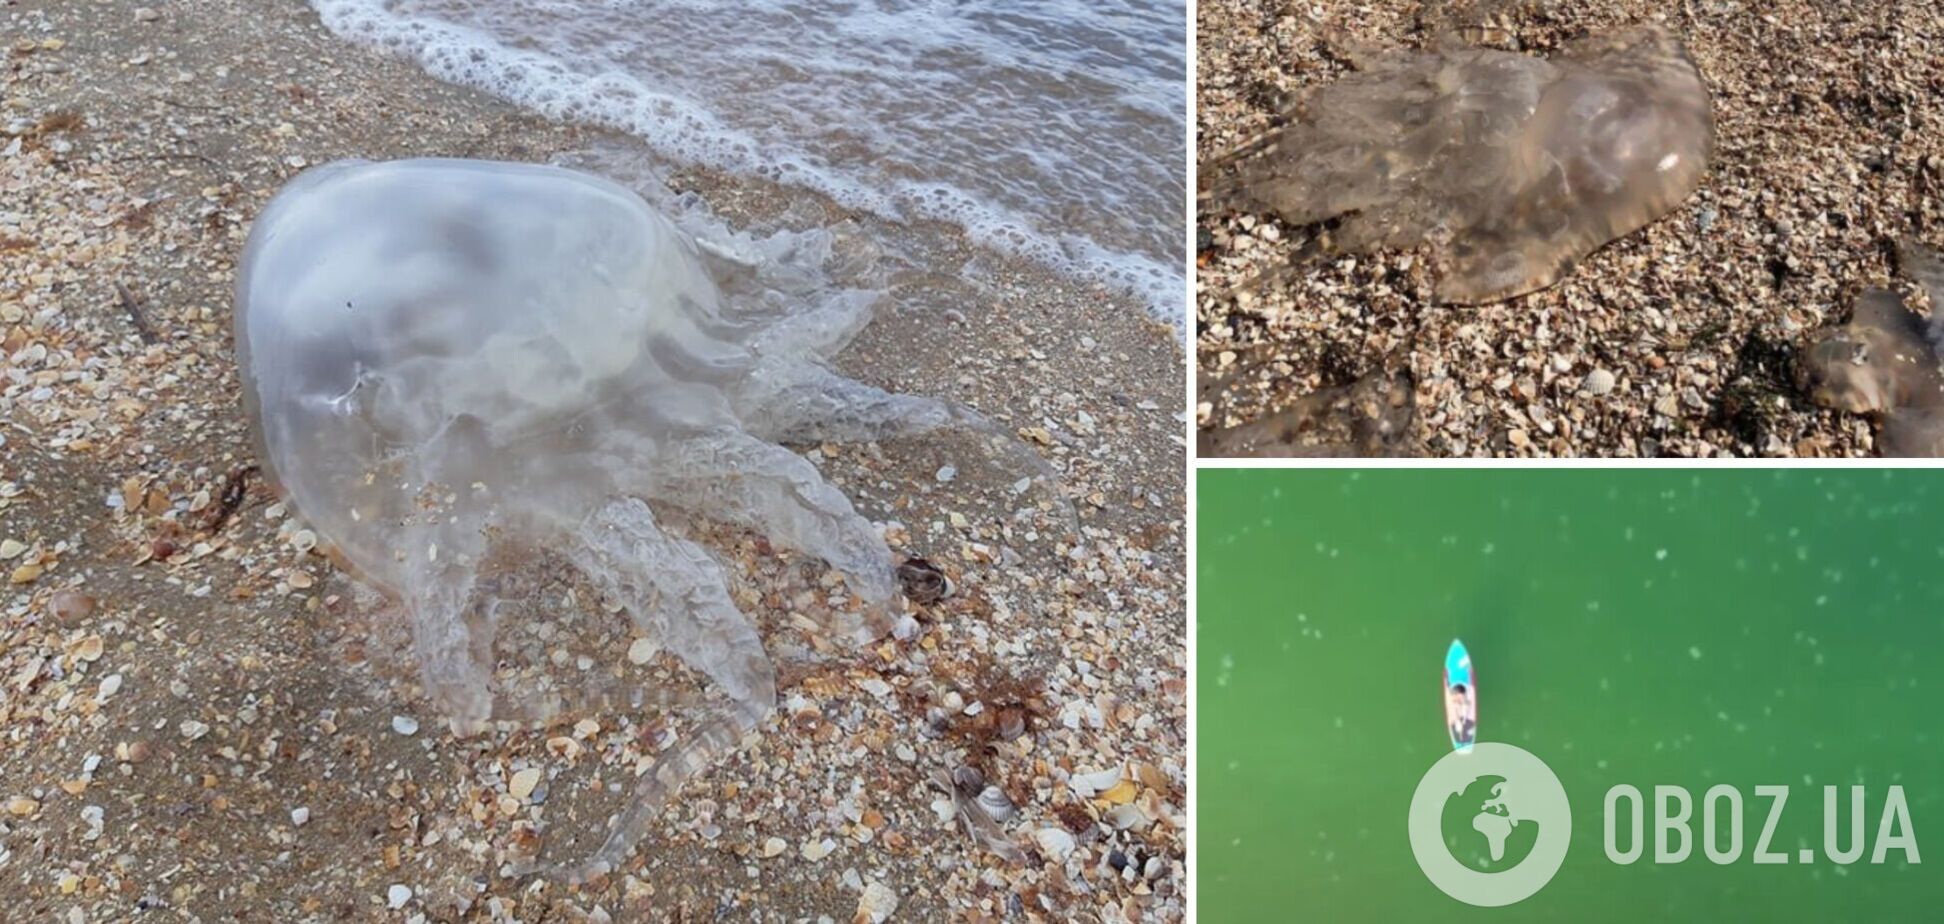 Много медуз и грязное море: туристка пожаловалась на отдых в Бердянске и показала видео